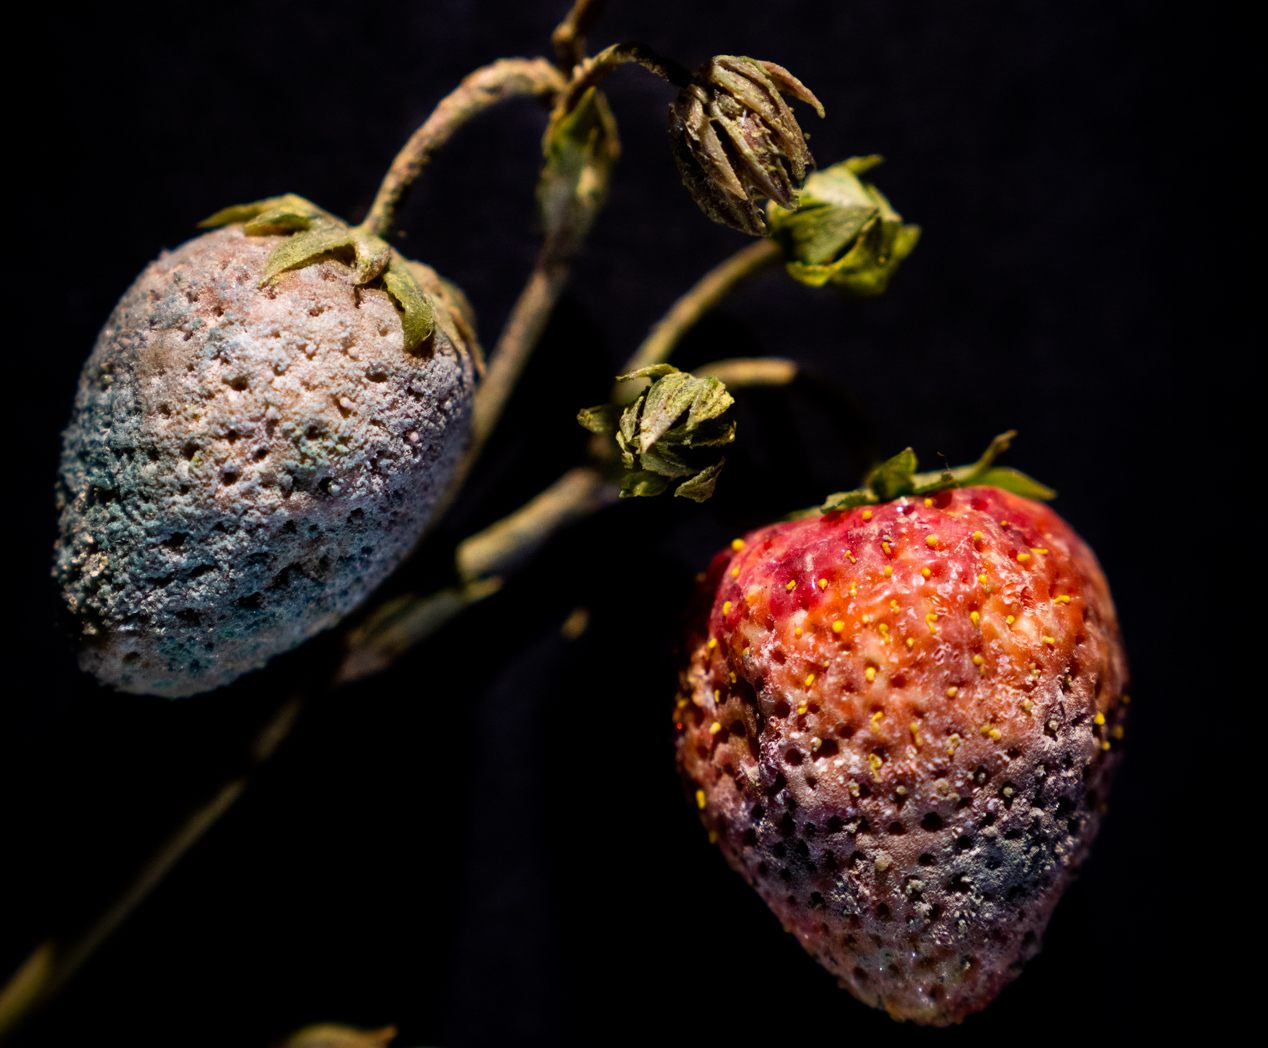 Glass strawberries, or <em>Fragaria</em>, gone white with imitation <em>Penicillium</em>.